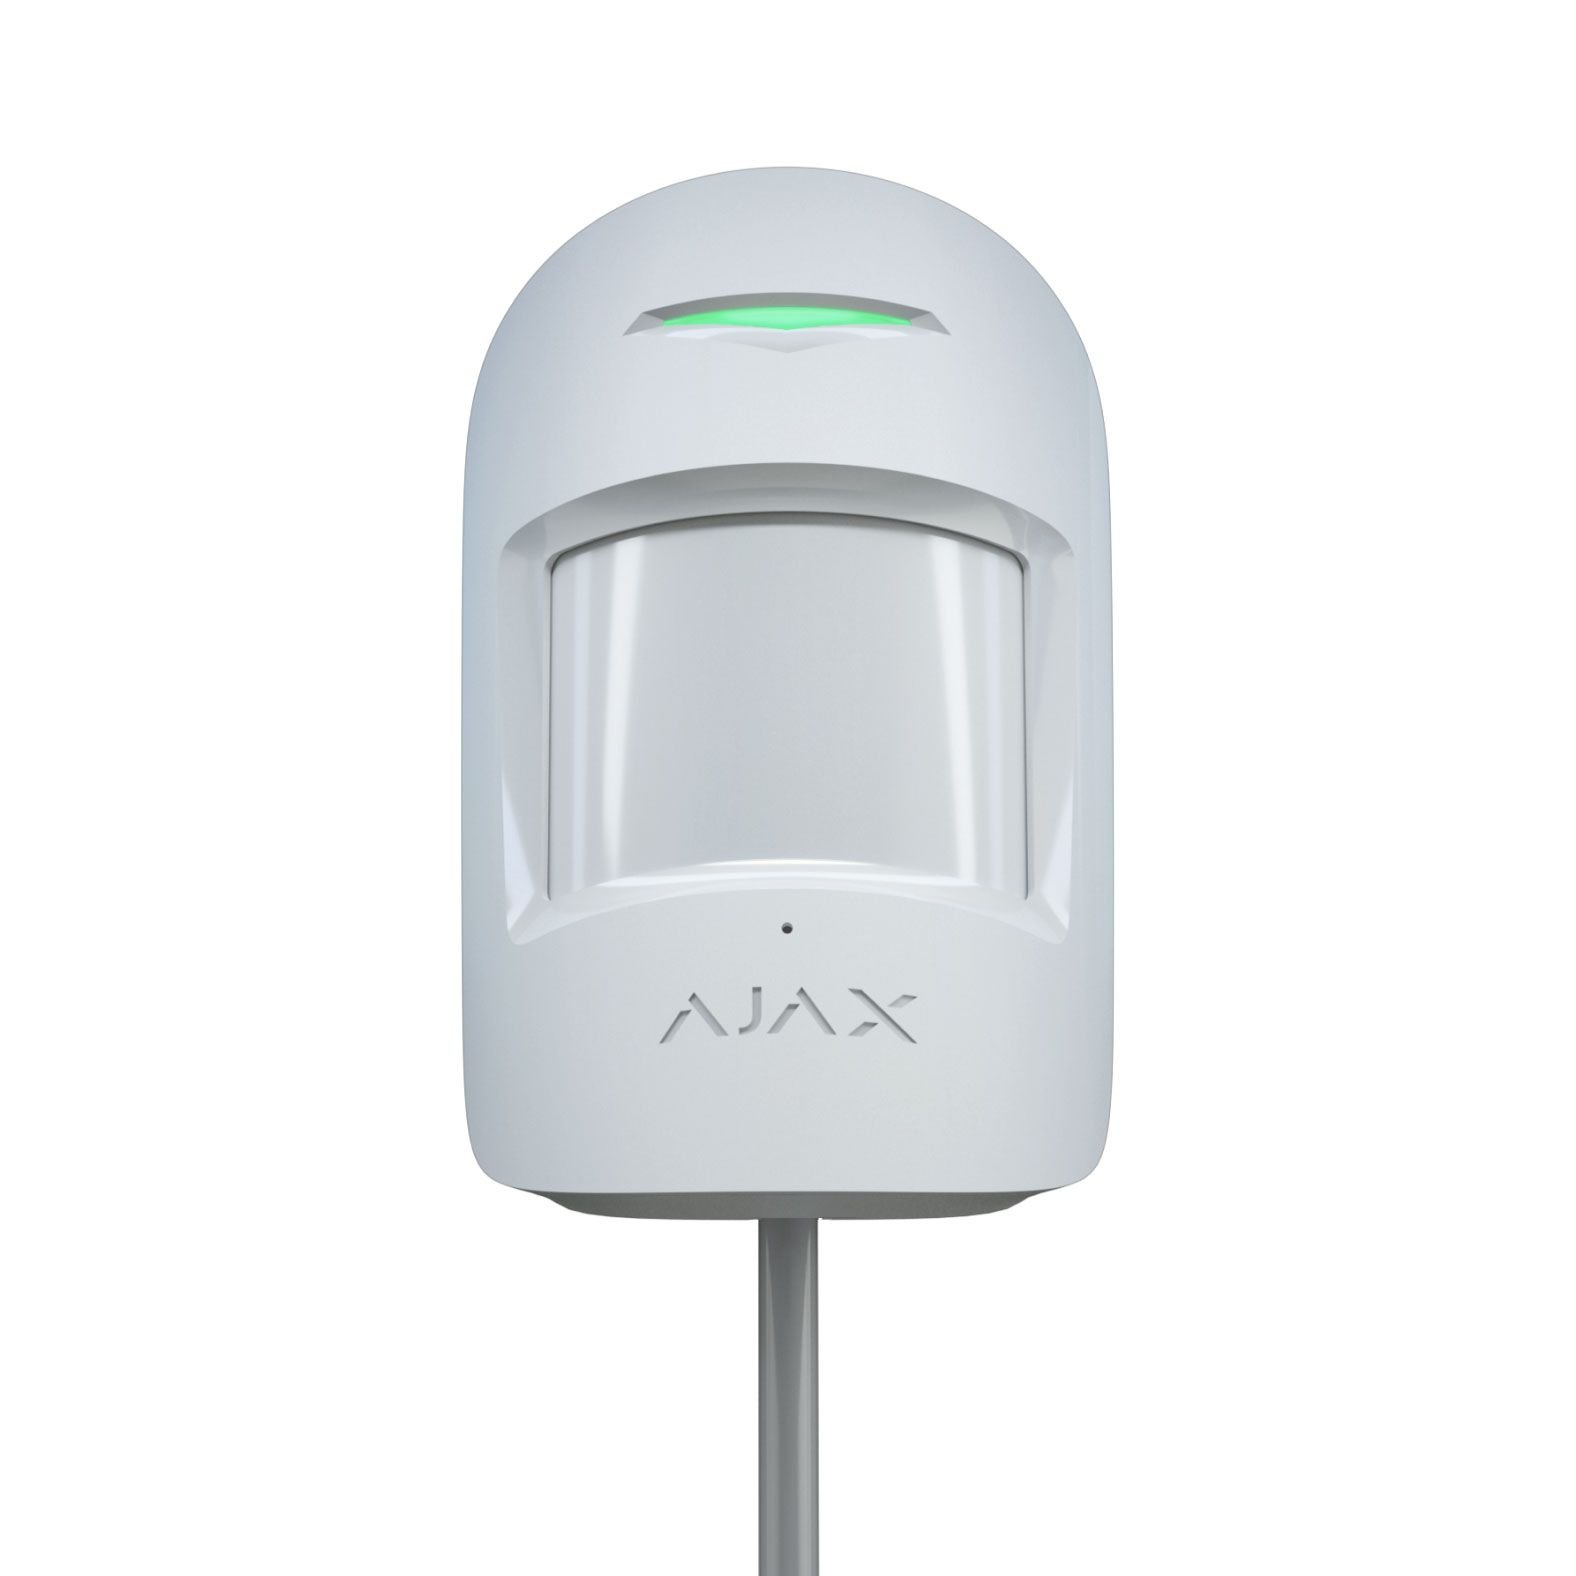 Ajax MotionProtect Plus Fibra White проводной датчик движения c радиочастотным сканированием